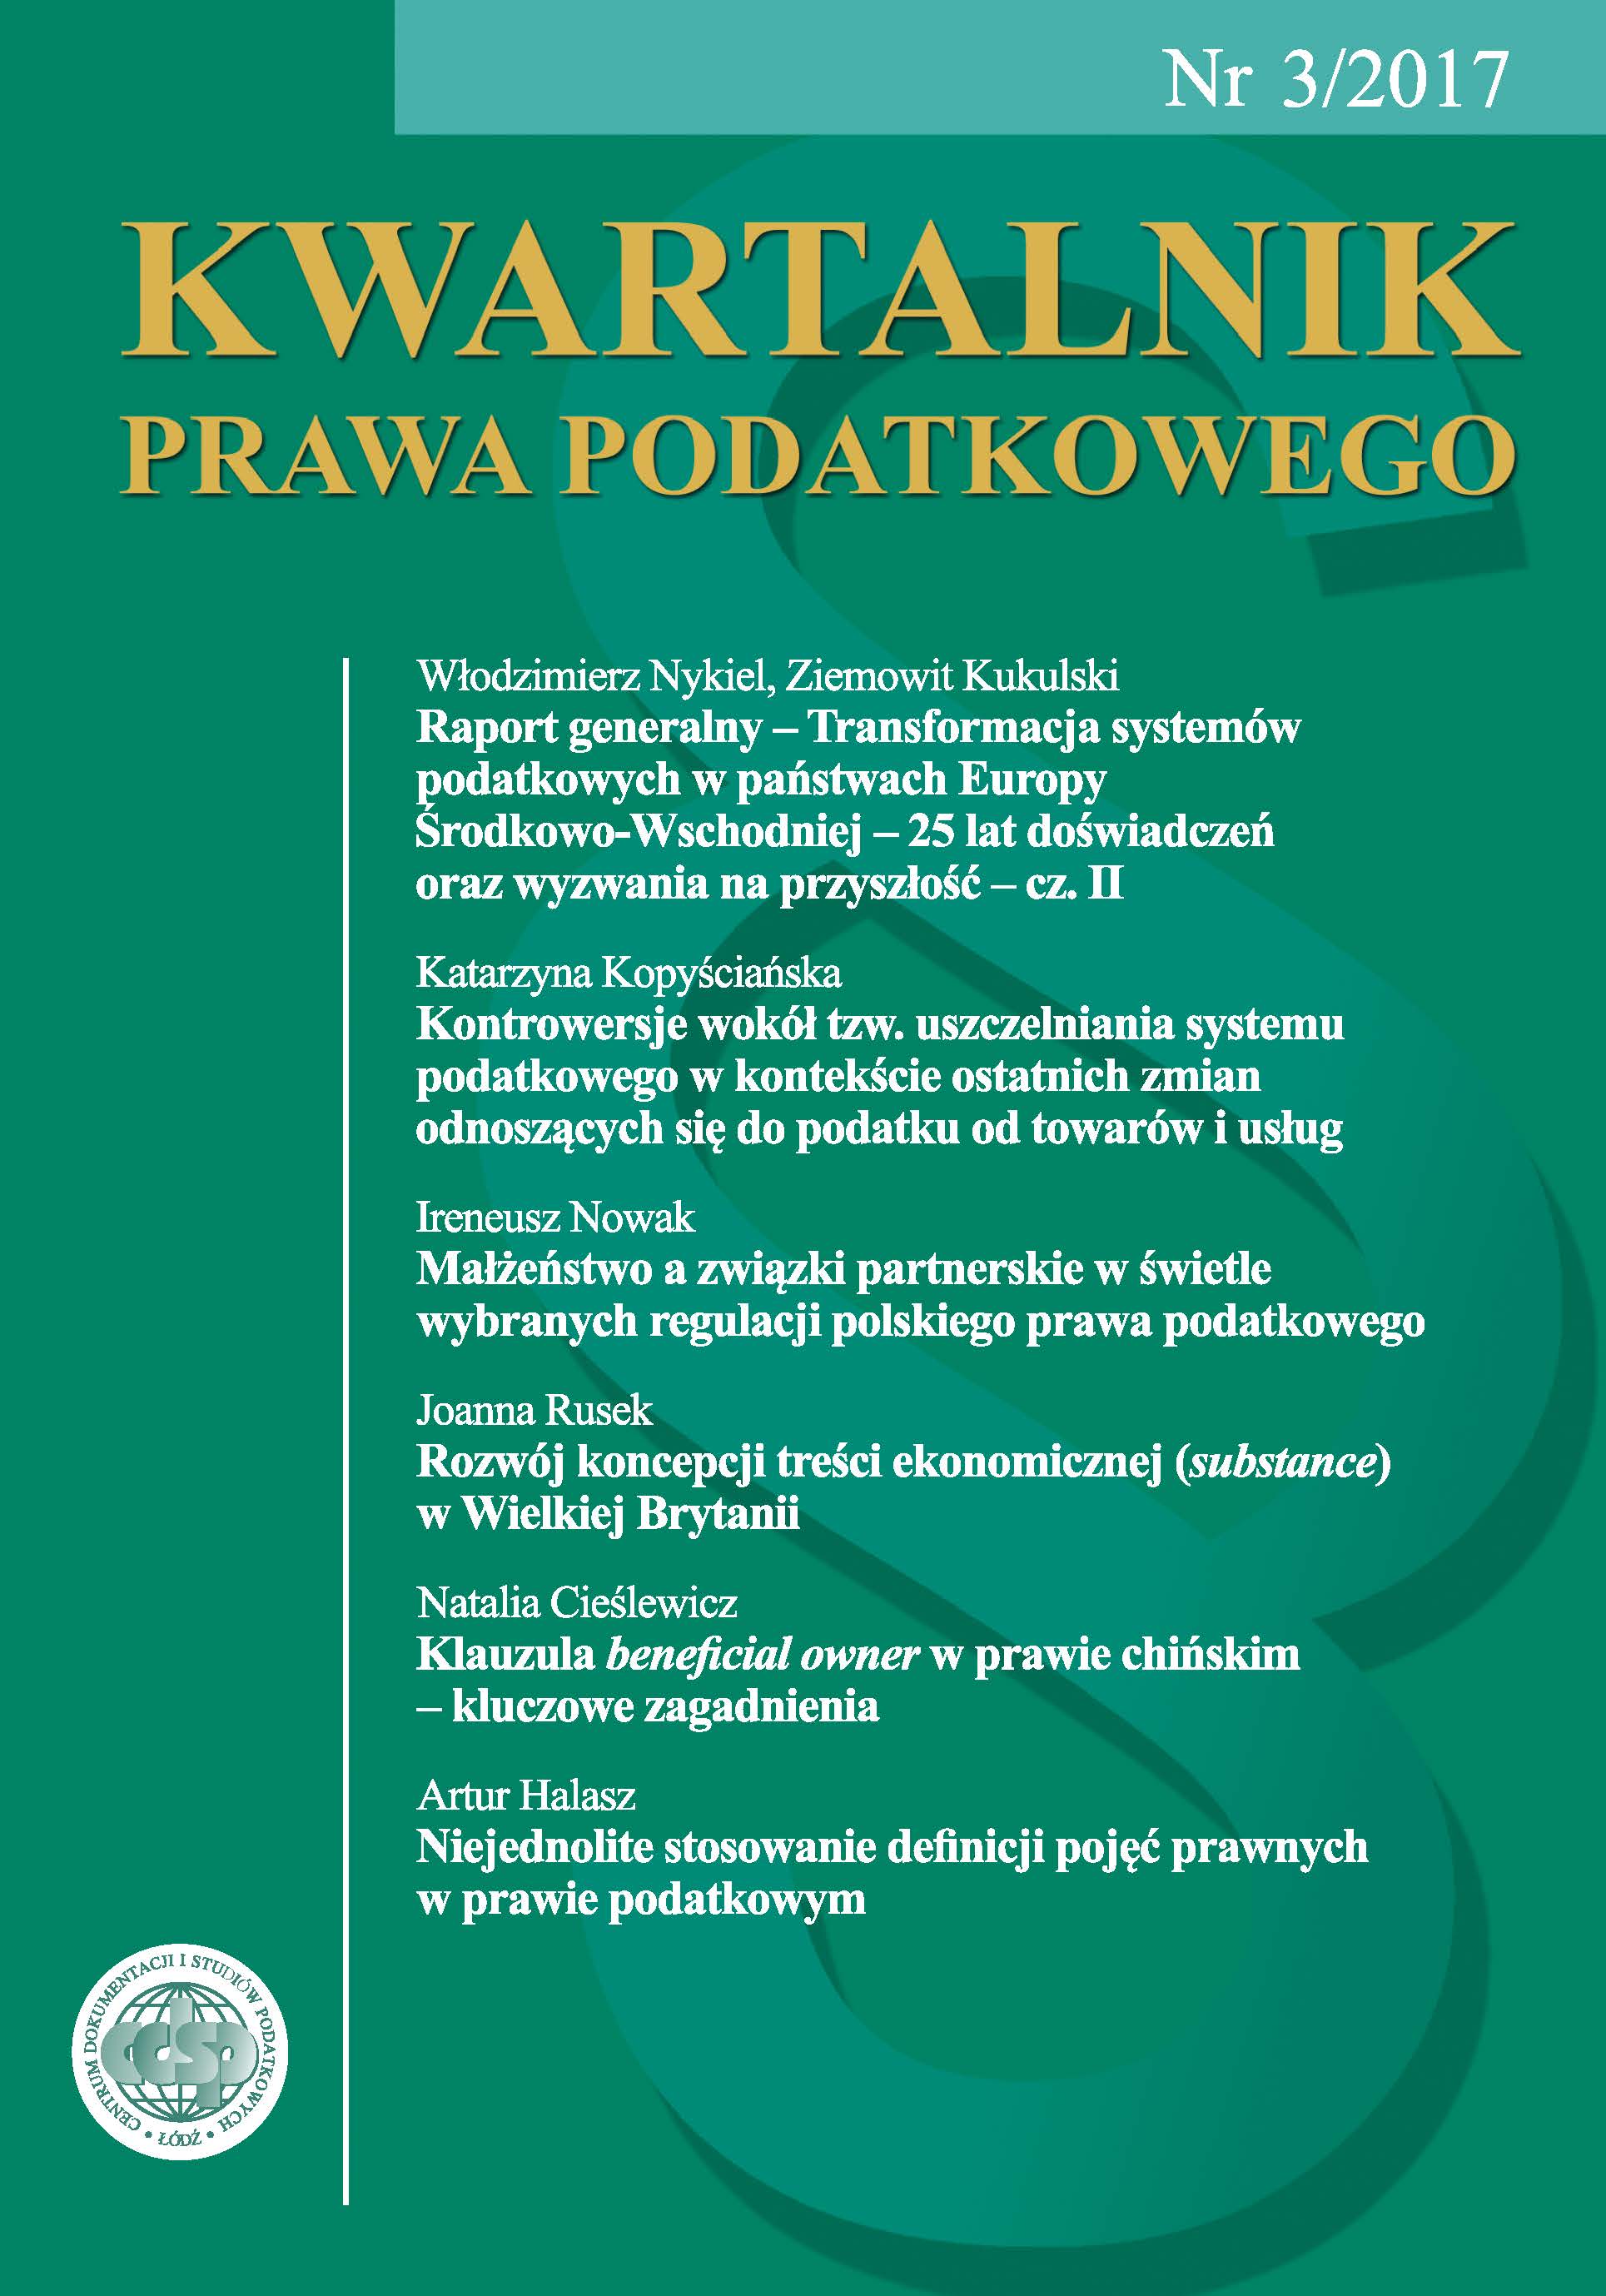 Małżeństwo a związki partnerskie w świetle wybranych regulacji polskiego prawa podatkowego